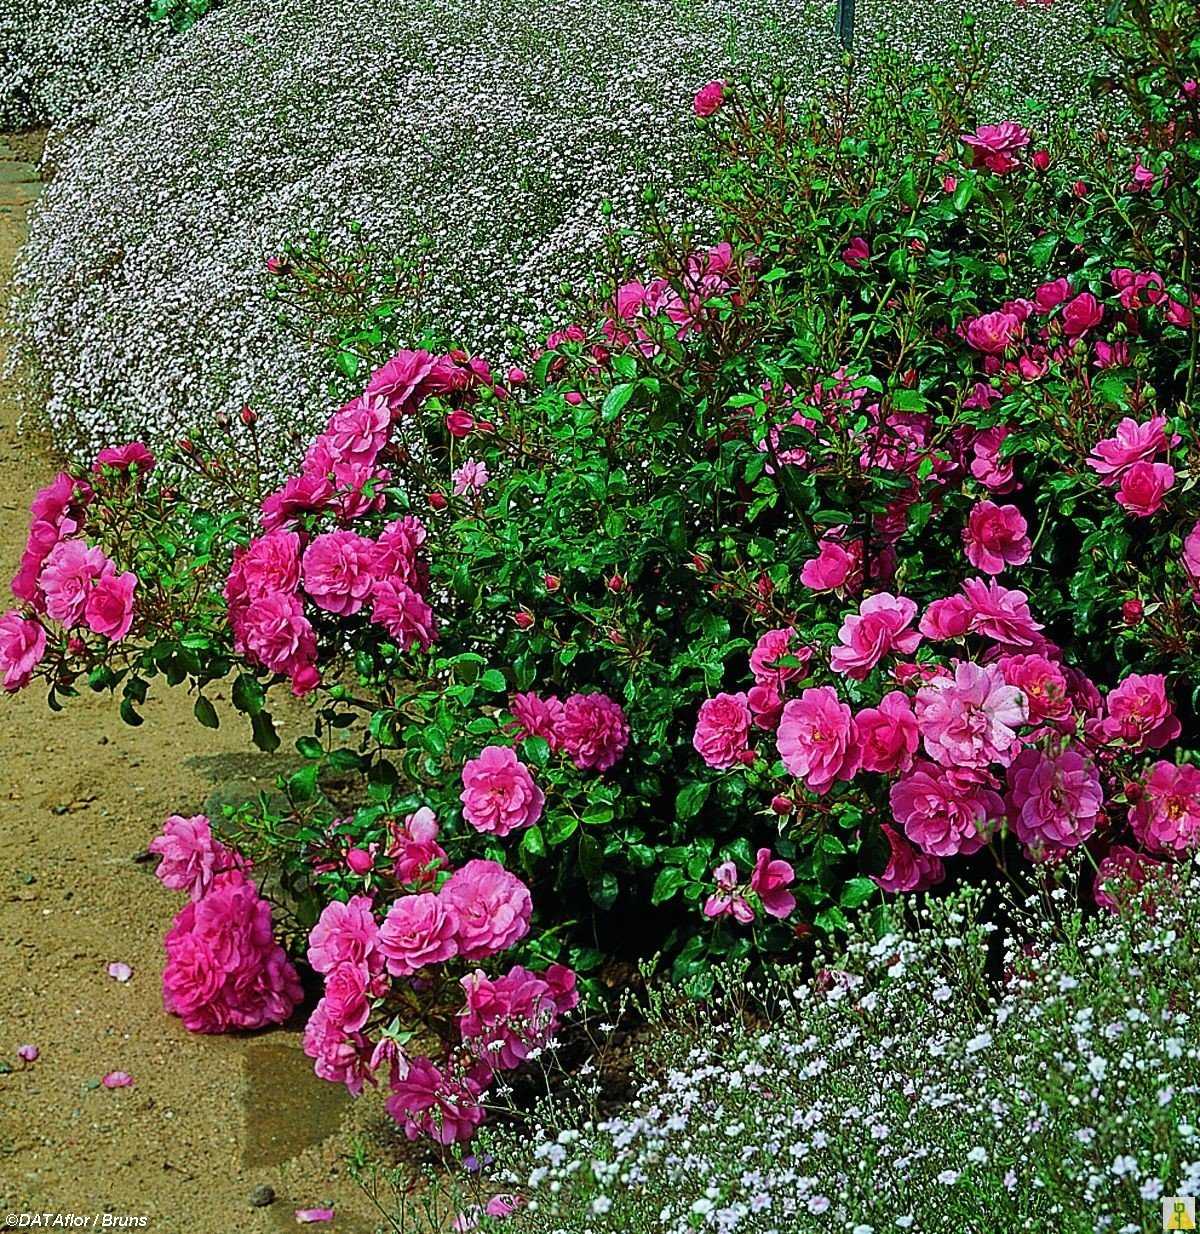 Полиантовая роза: описание, особенности ухода и выращивания, правила пересадки, фото - sadovnikam.ru